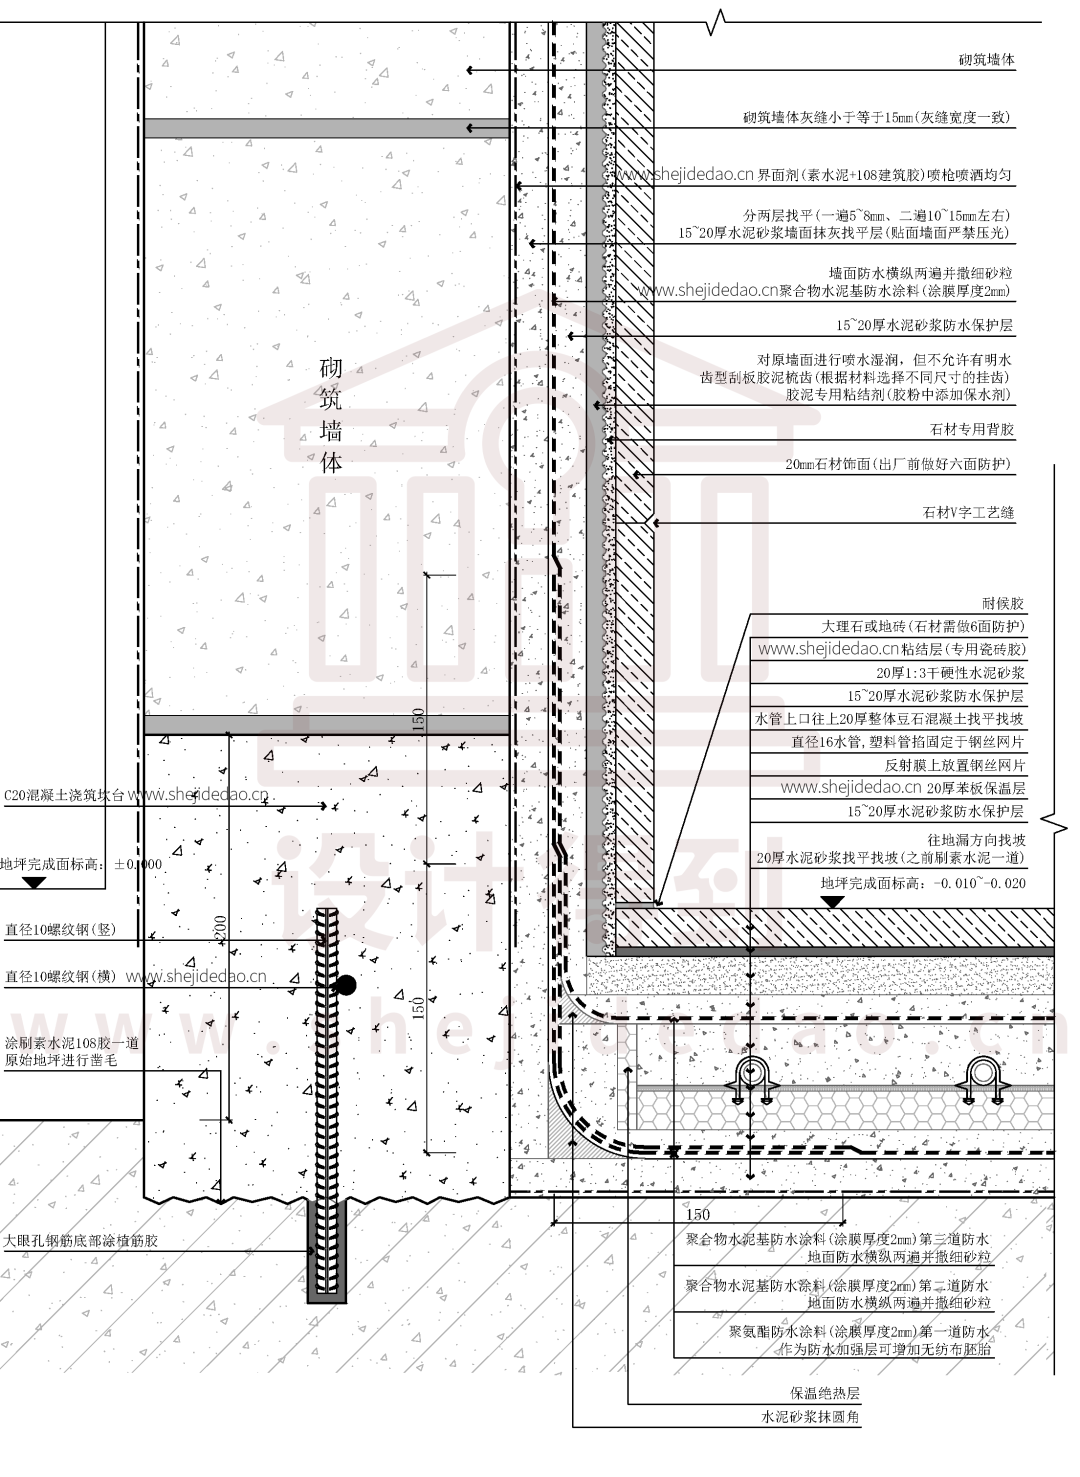 1,地梁的标准表达方式;2,墙根防水的设计细节;3,地暖与墙体的关系及